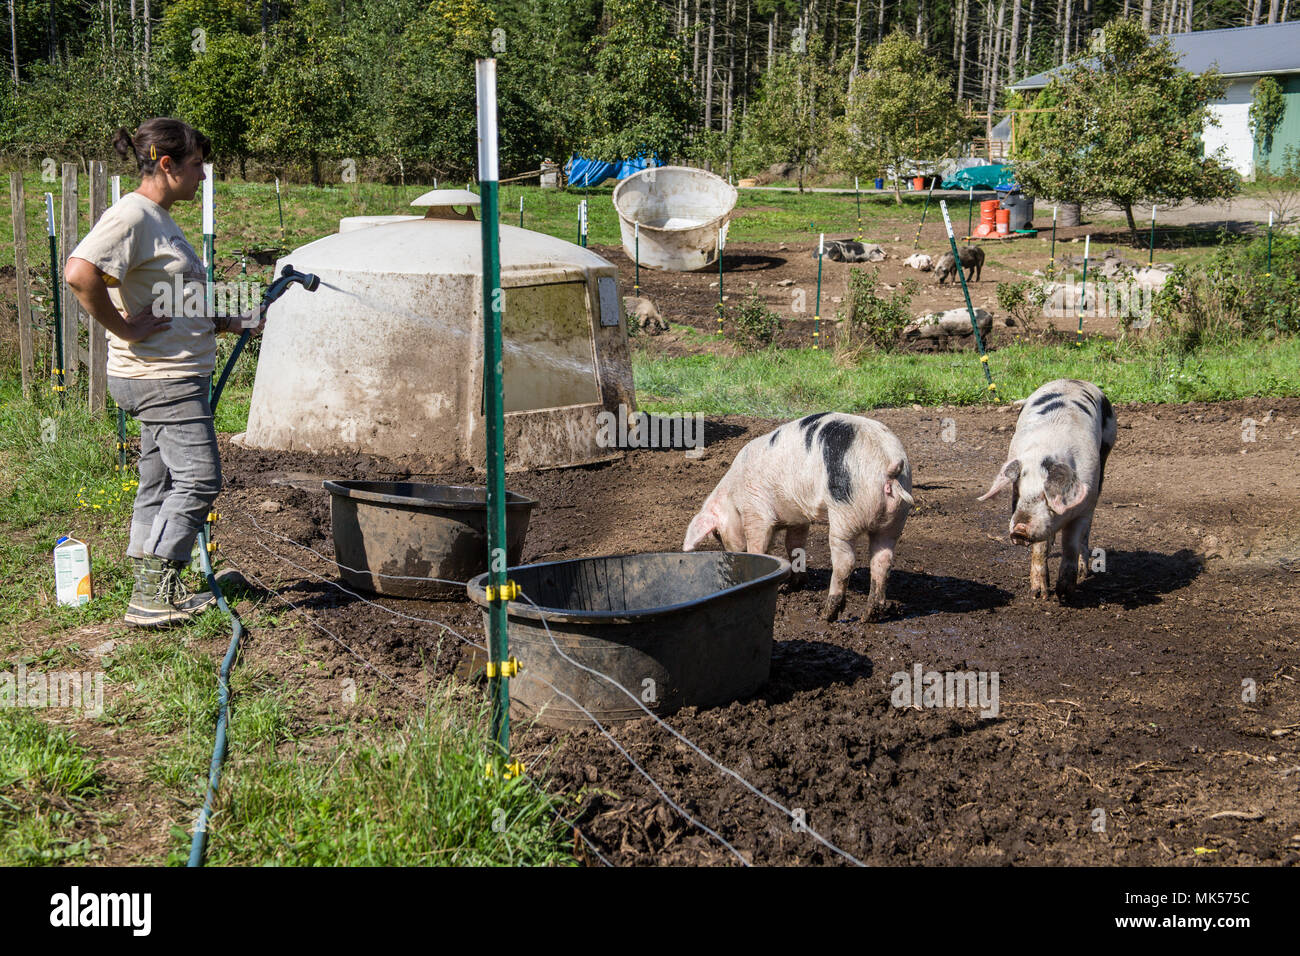 Nelke, Washington, USA. Frau neubefüllung Gloucestershire alte Flecken schweine Wasser Whirlpool und Spritzen ein Schwein an einem heißen Tag. (Für die redaktionelle Nutzung) Stockfoto